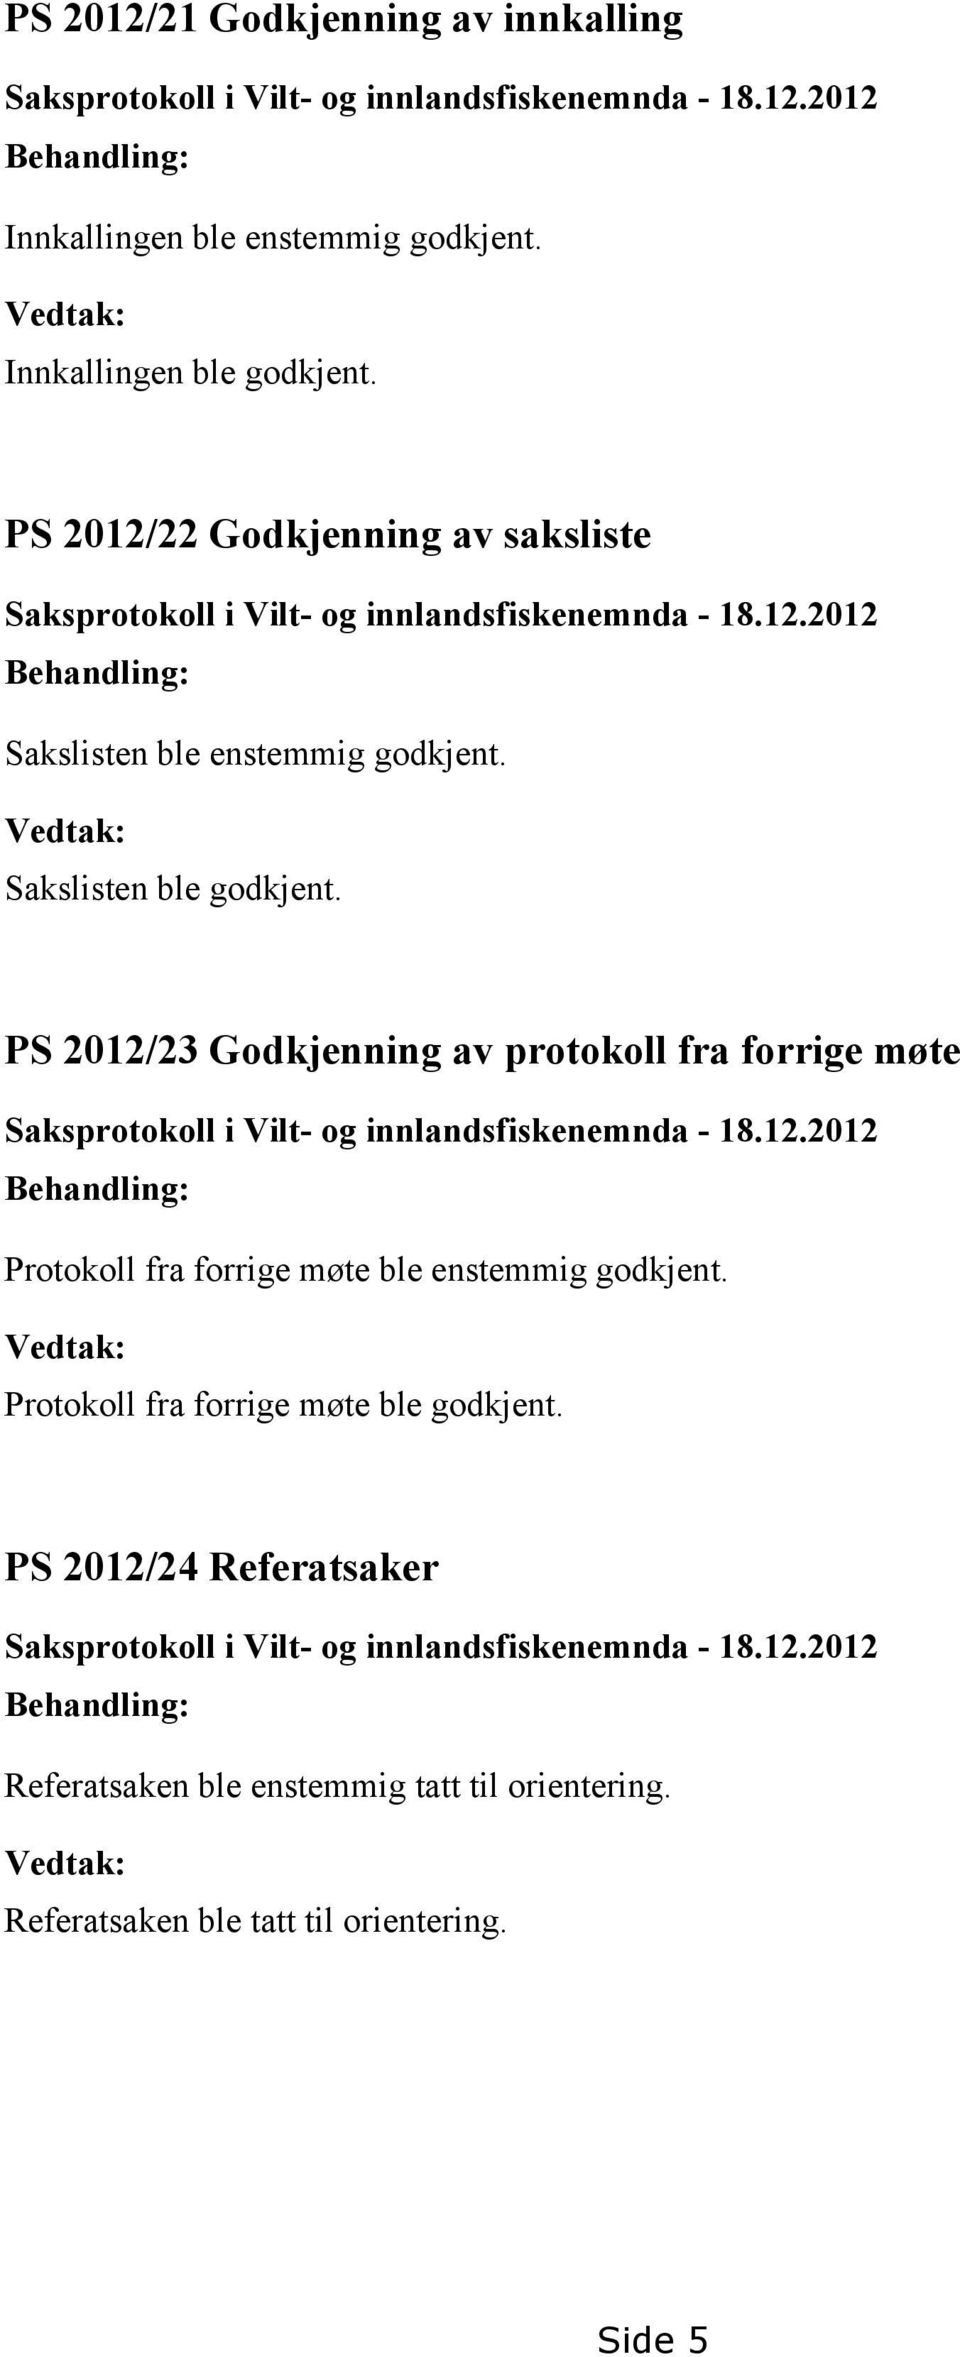 PS 2012/23 Godkjenning av protokoll fra forrige møte Saksprotokoll i Vilt- og innlandsfiskenemnda - 18.12.2012 Behandling: Protokoll fra forrige møte ble enstemmig godkjent.